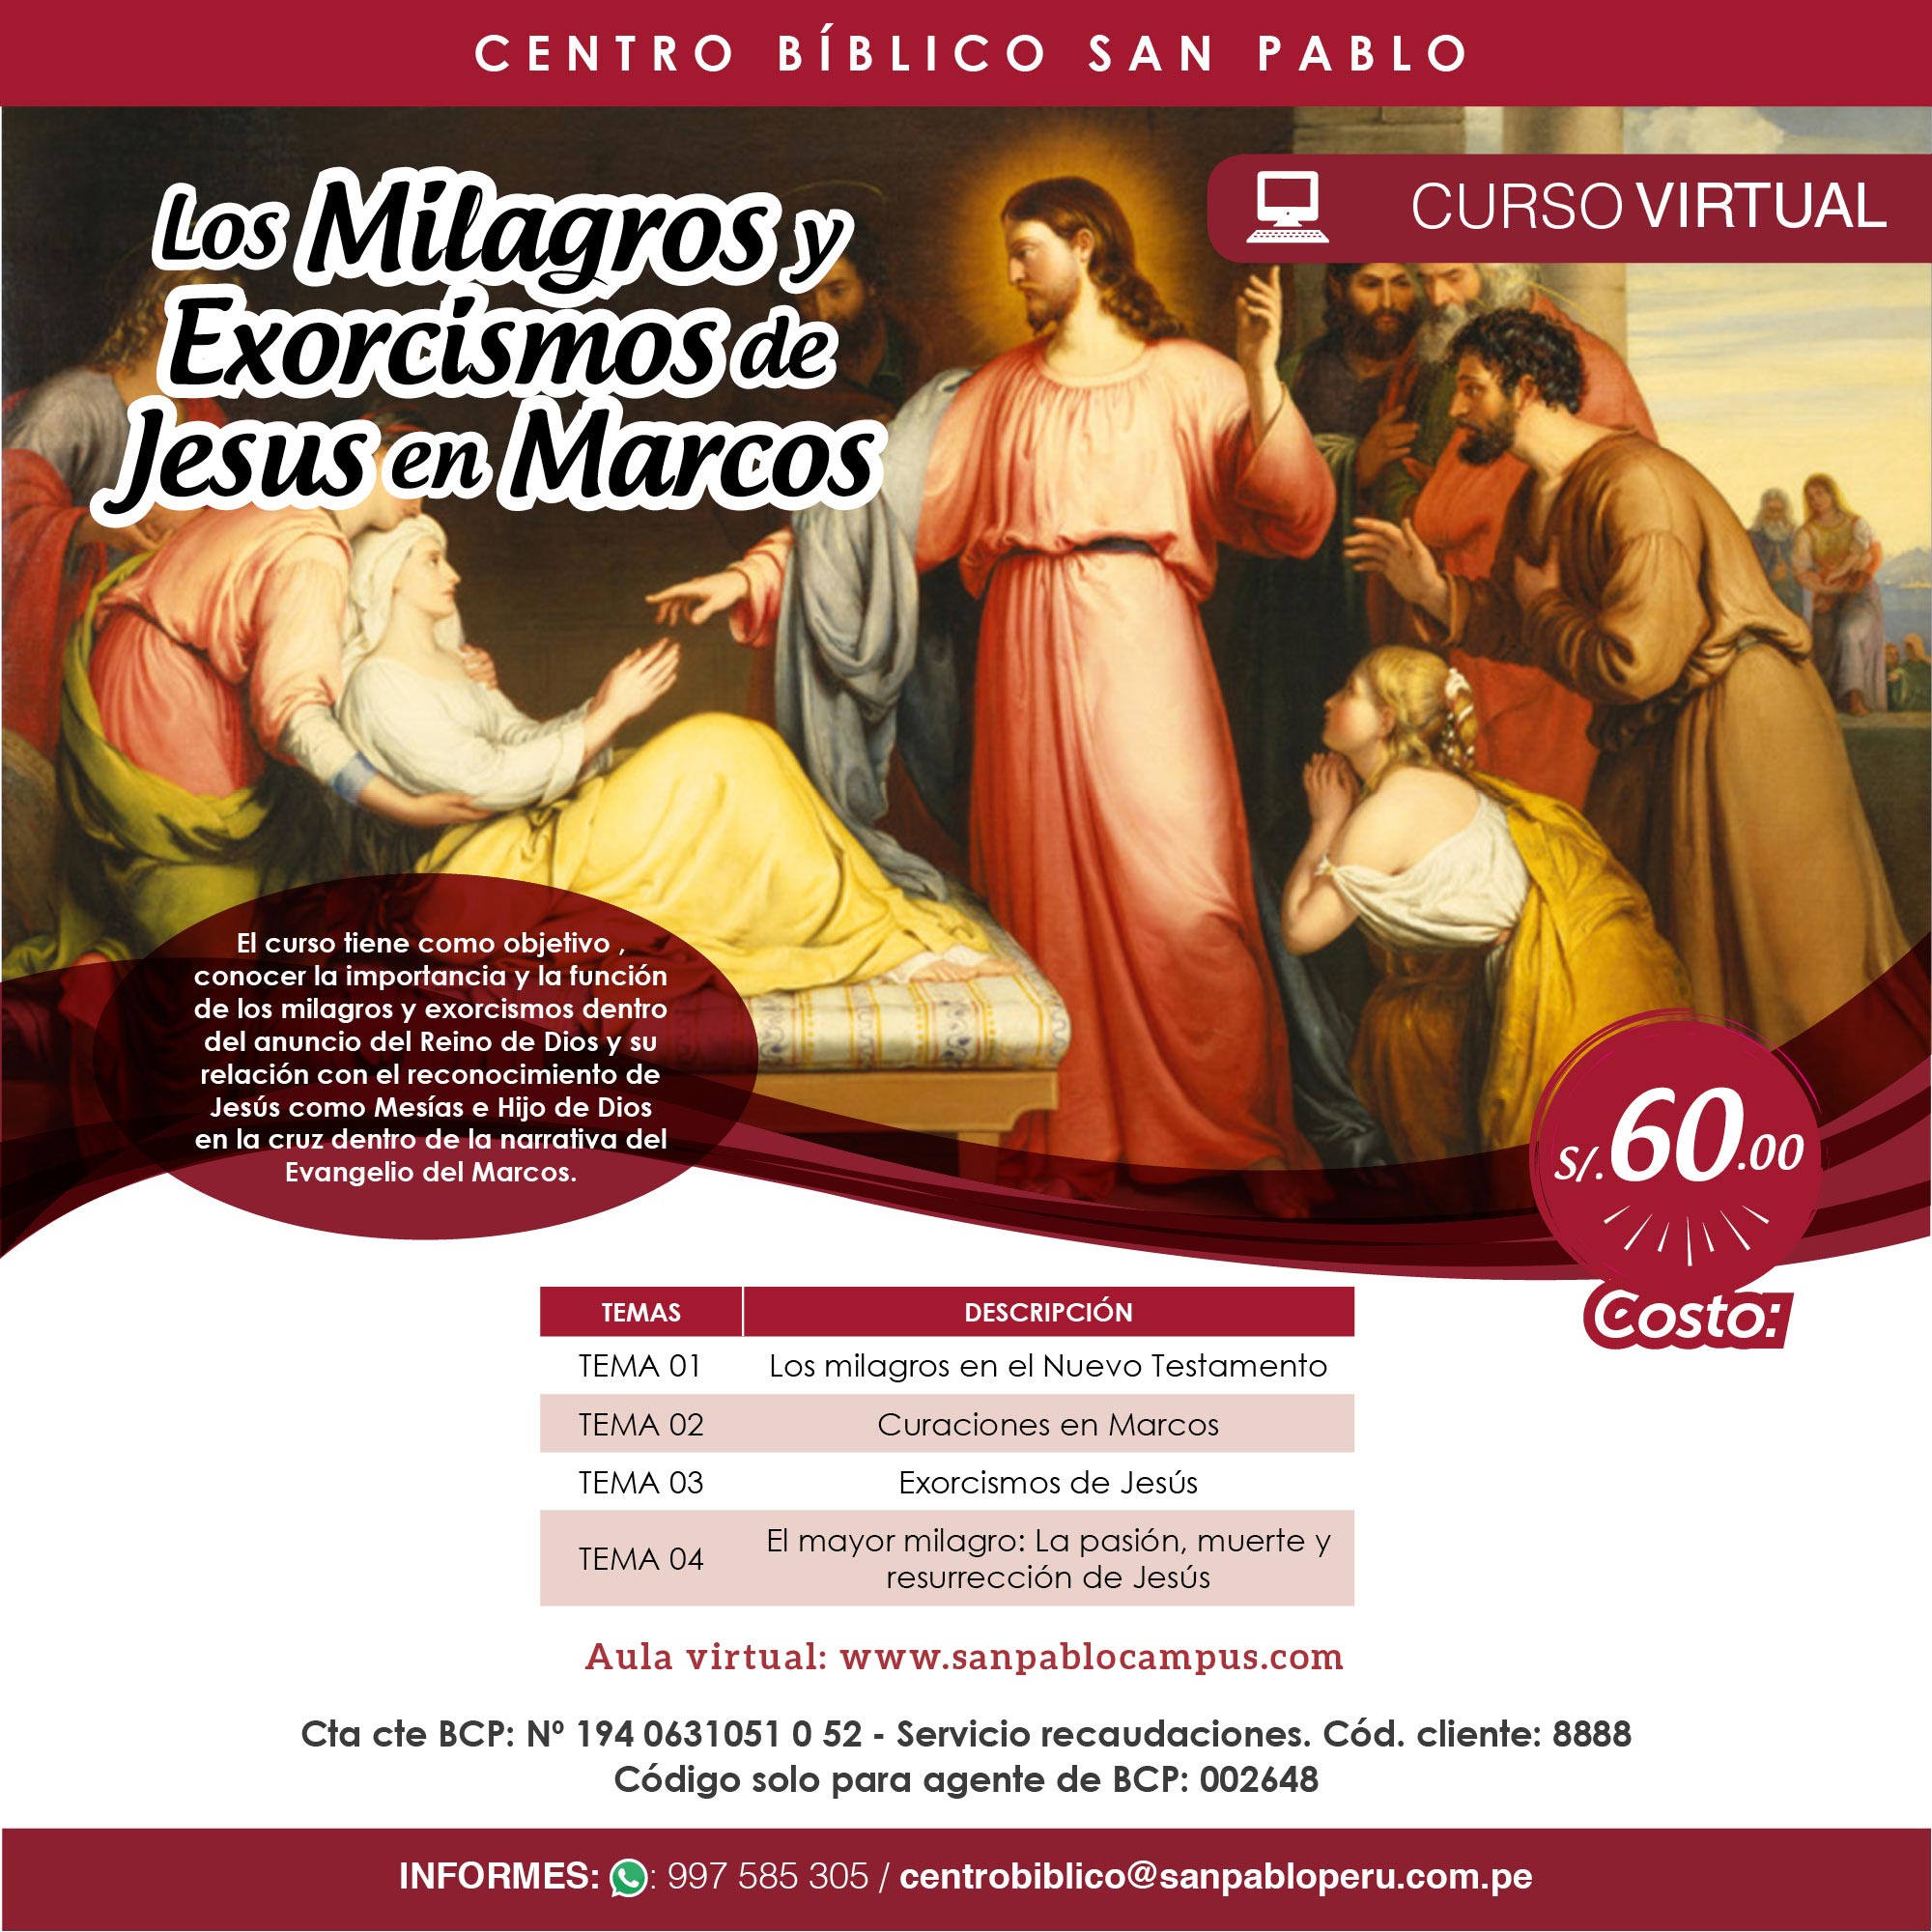 Curso Virtual: “Los Milagros y Exorcismos de Jesús en Marcos”